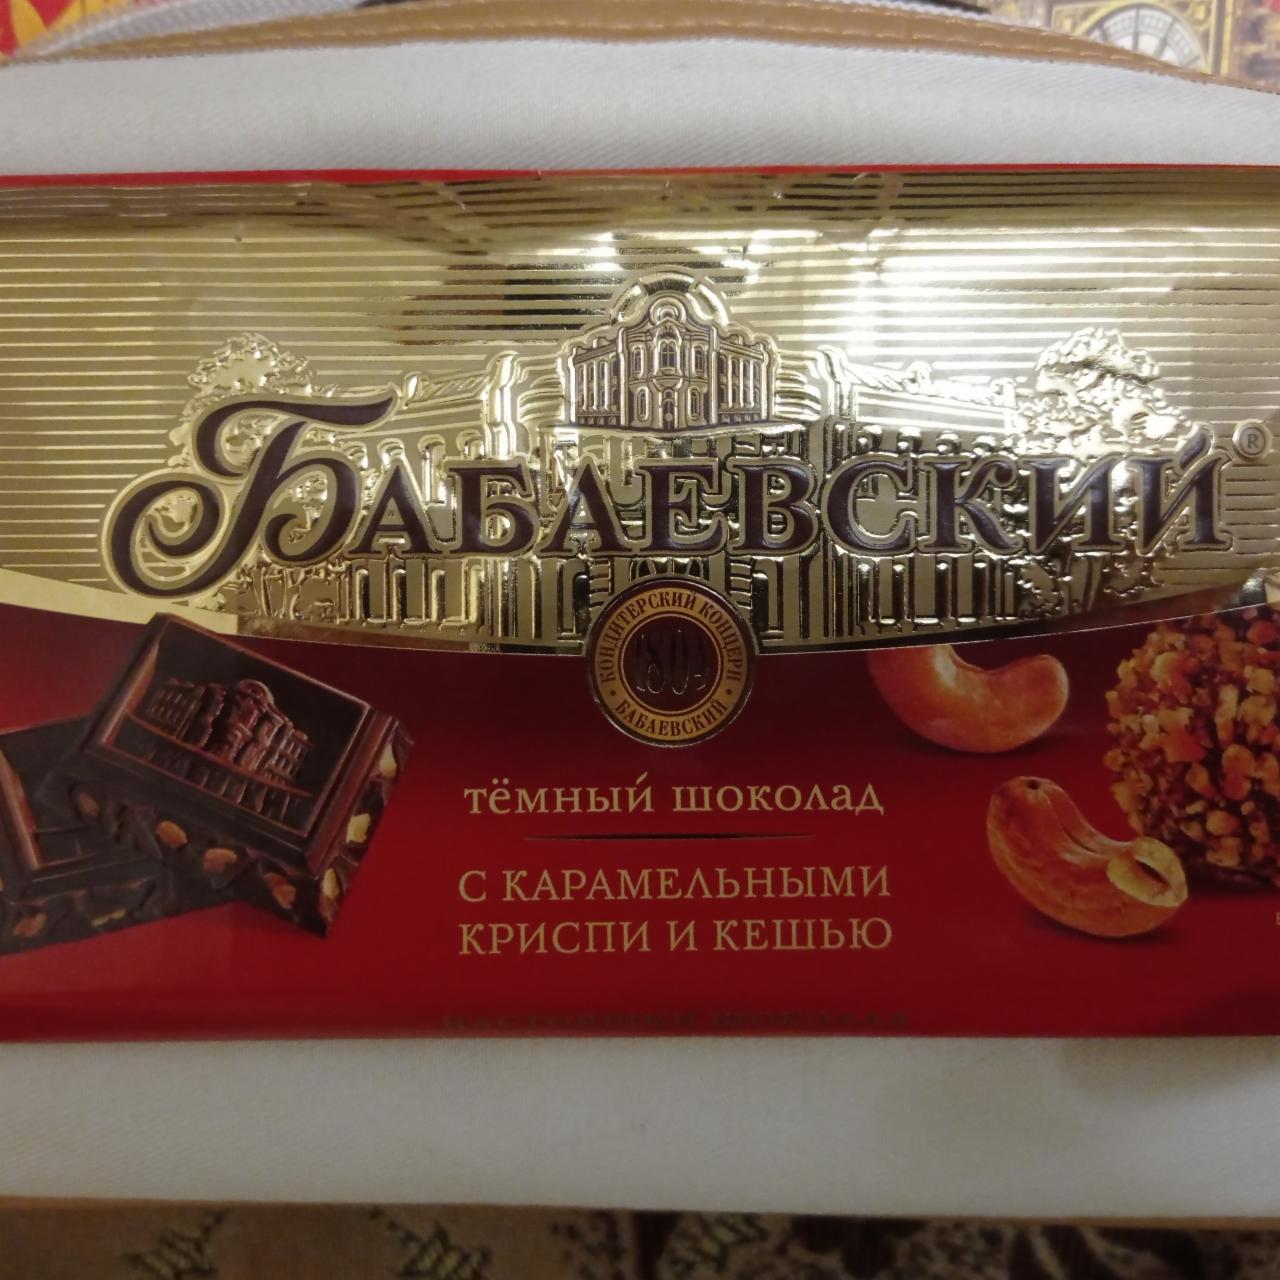 Фото - Темный шоколад с карамельными Криспи и кешью Бабаевский